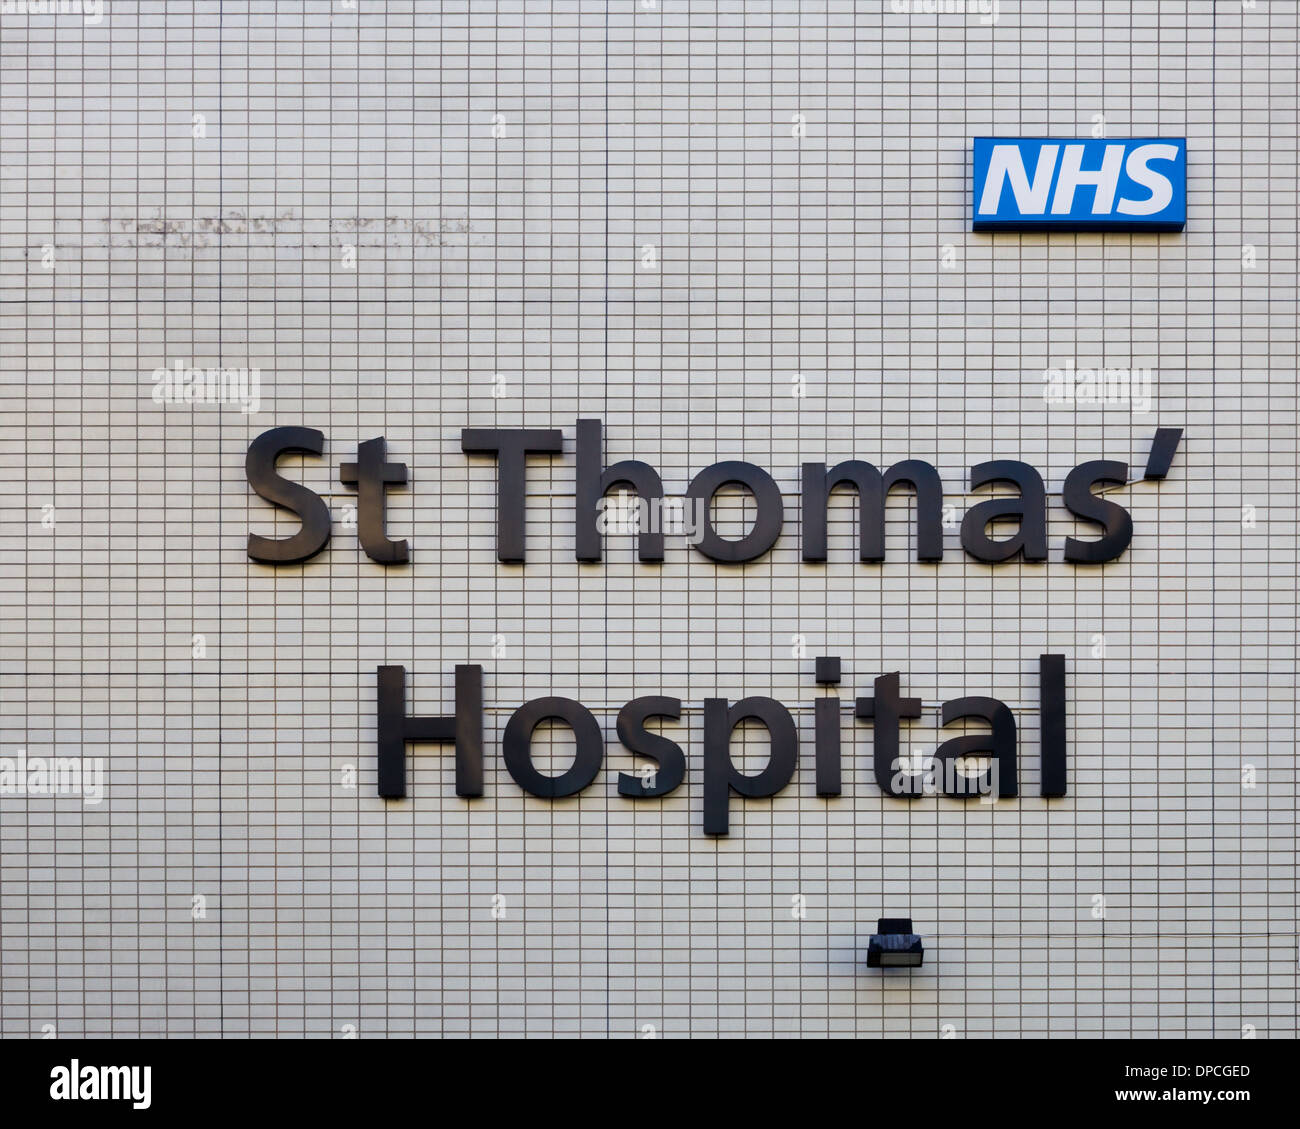 London, UK - 11h Januar 2013: eine Nahaufnahme, ein Zeichen für das St. Thomas Hospital in London Stockfoto